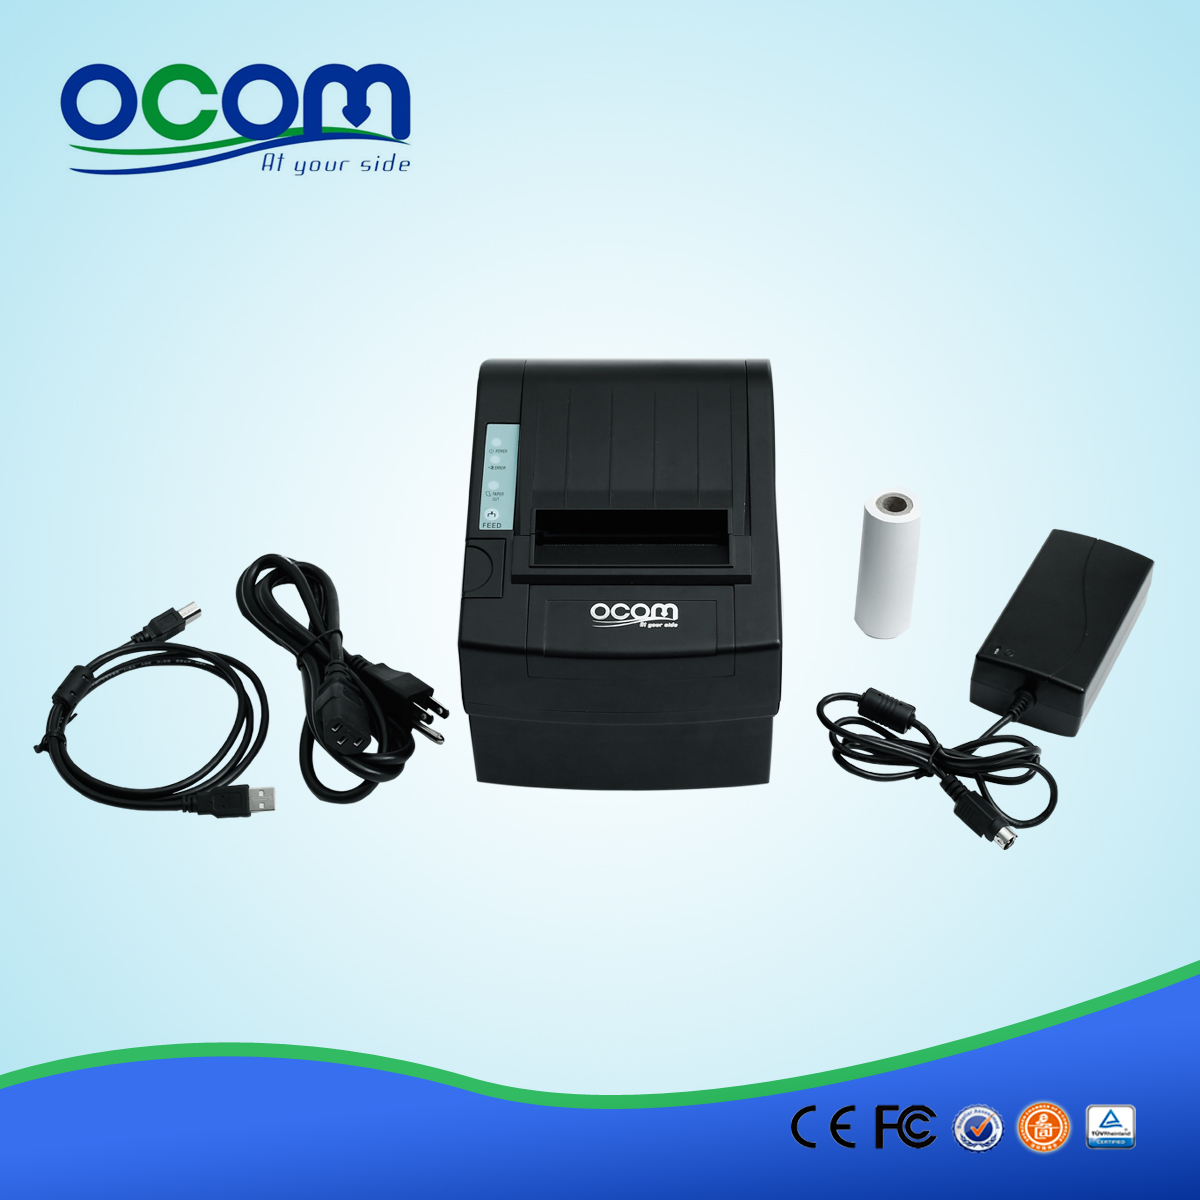 3 pollici Wifi termica per ricevute Printer OCPP-806-W